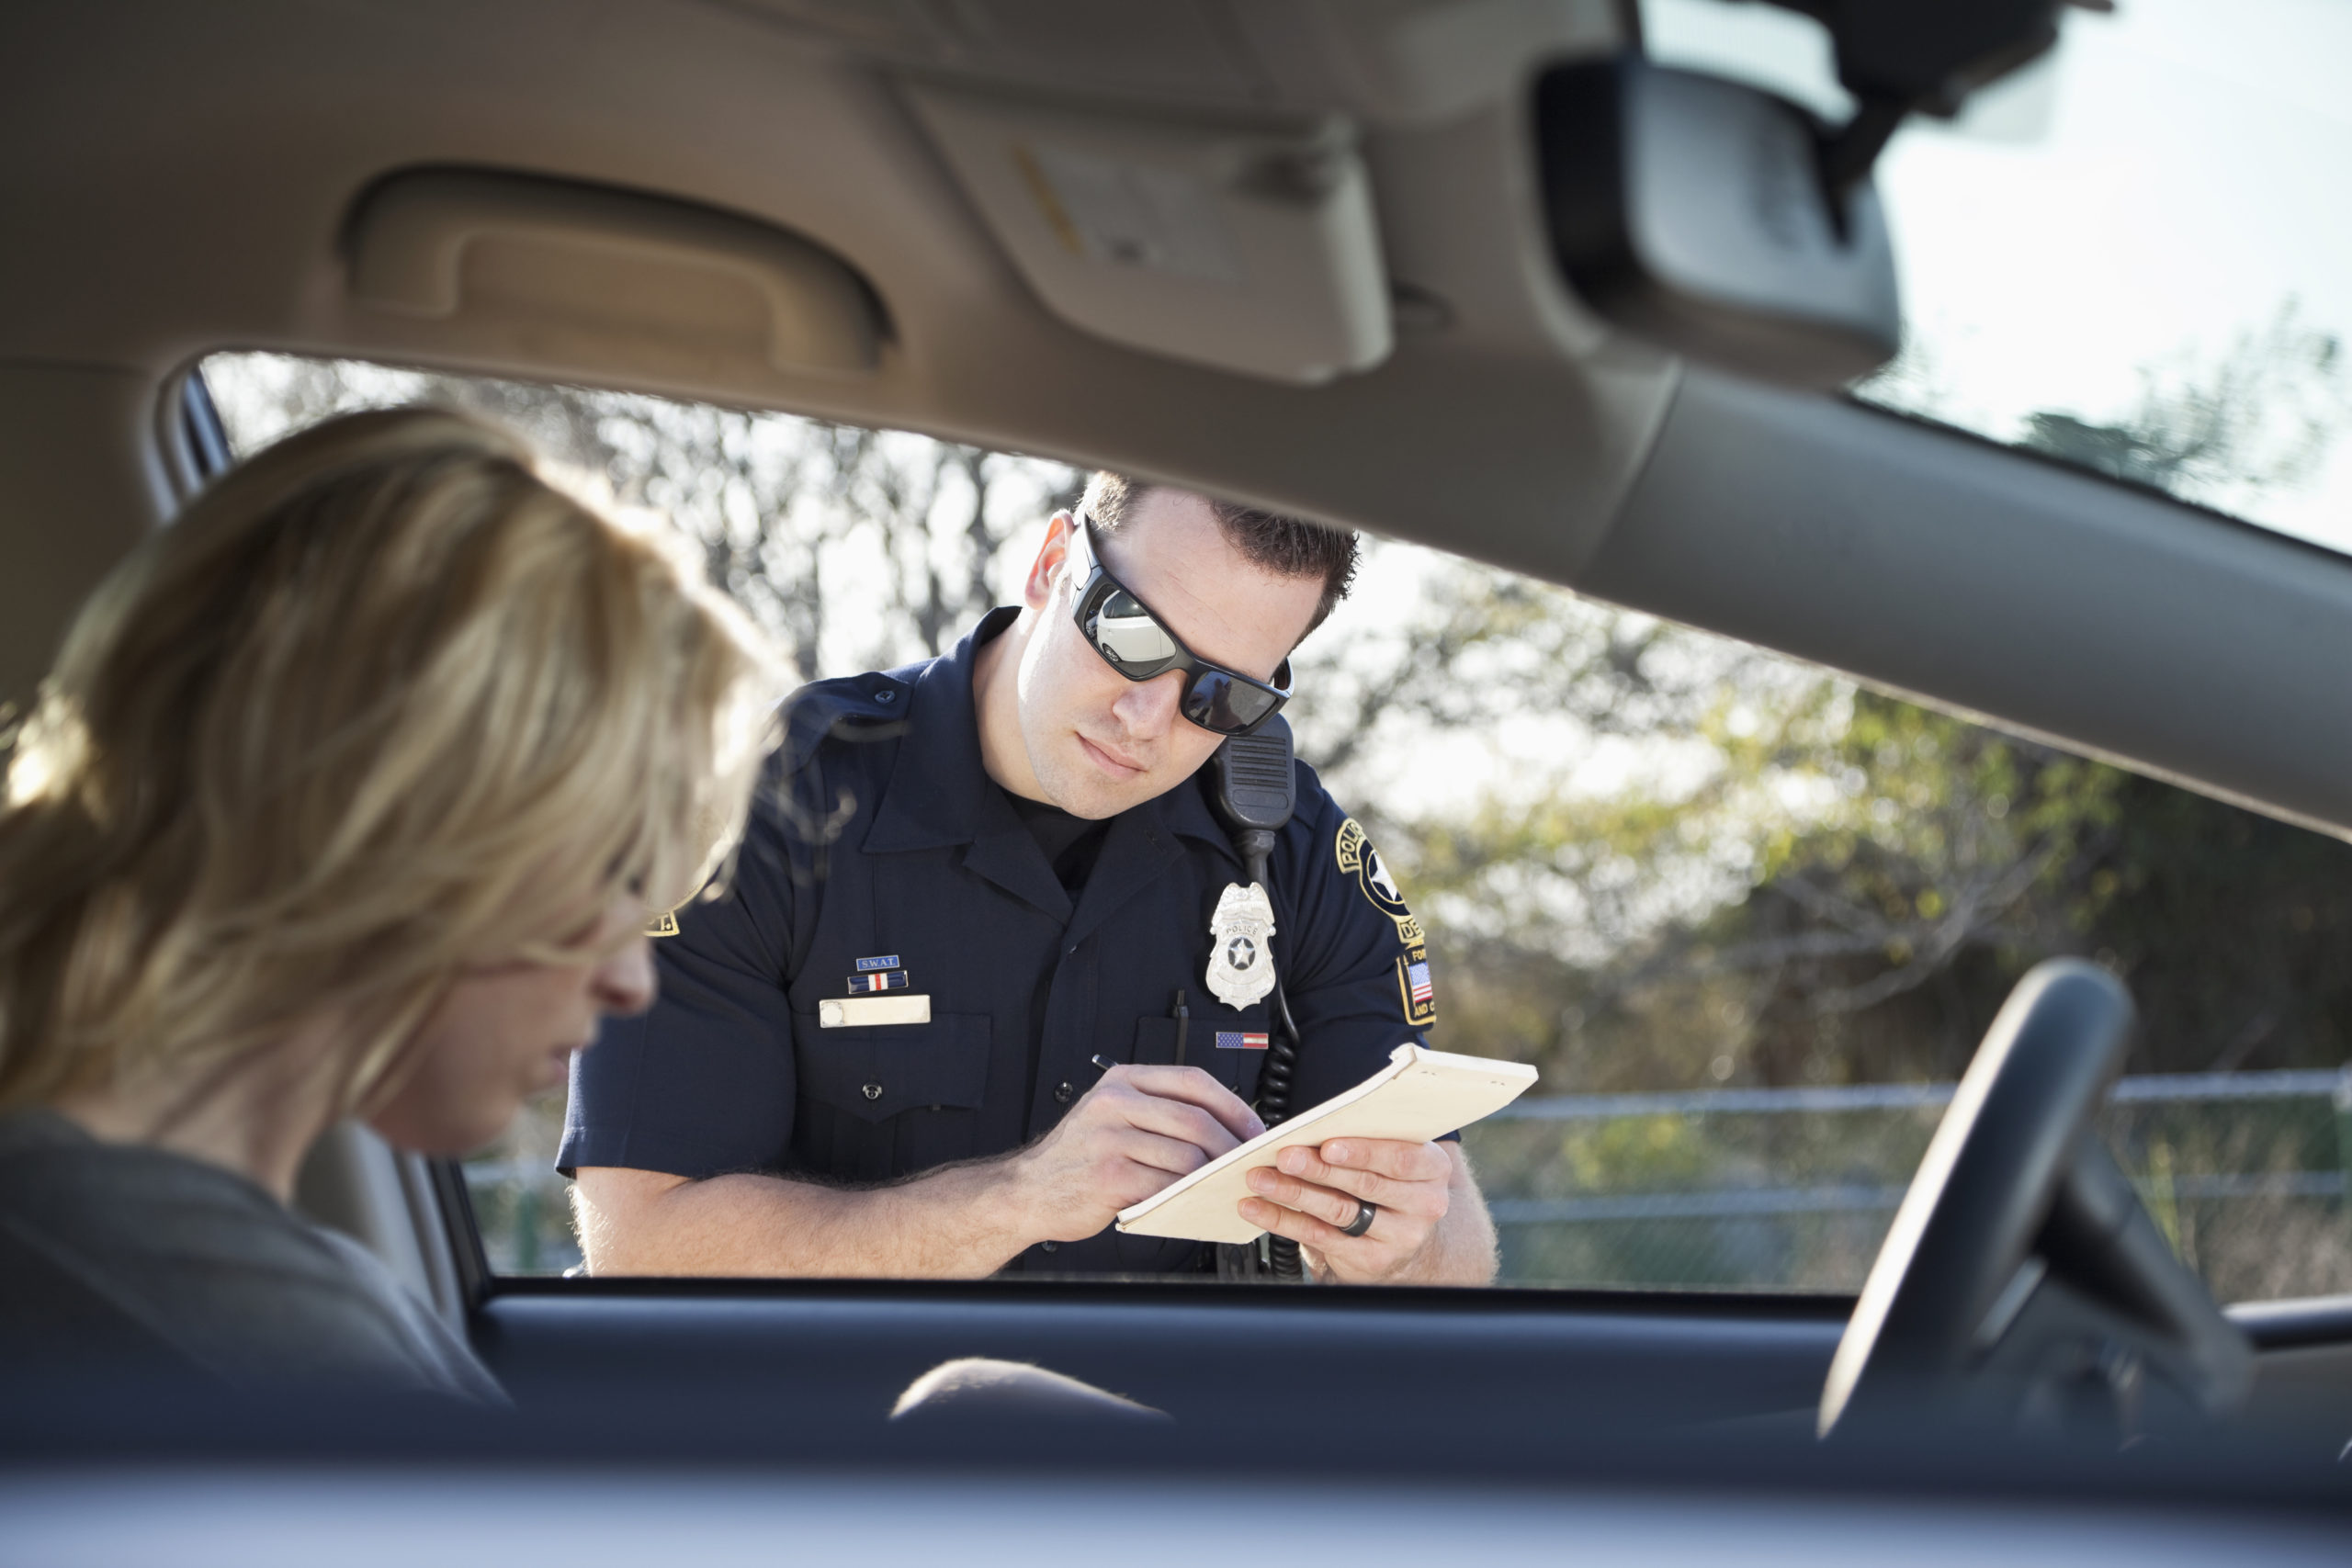 Oficial de policía mirando en el auto y escribiendo una multa mientras la conductora busca documentos